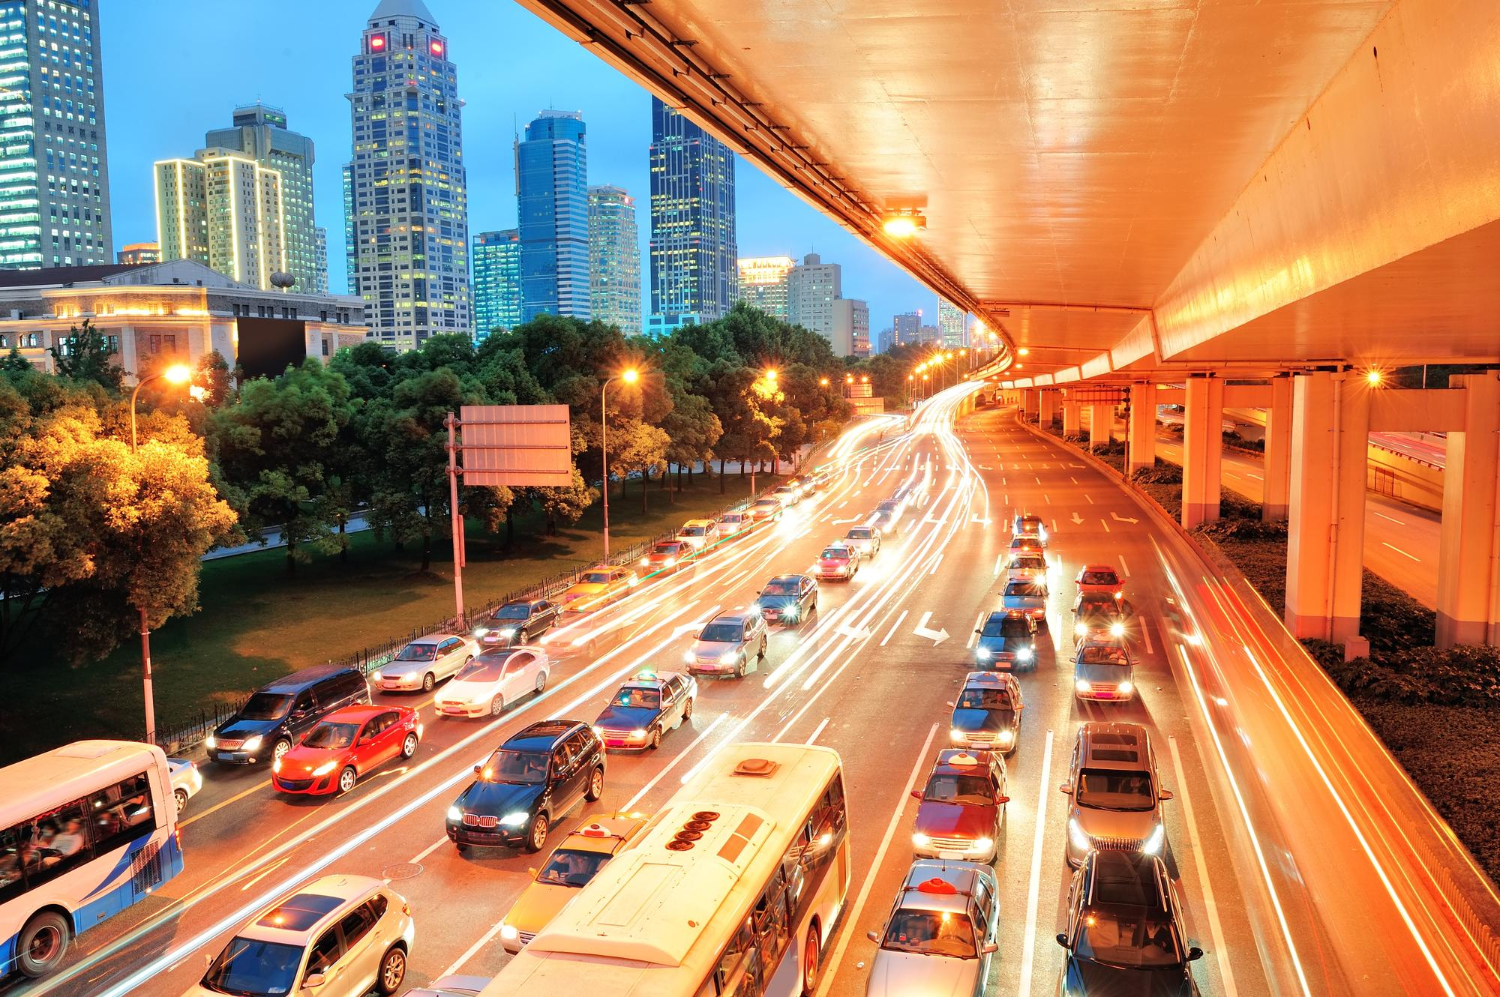 Libur Puasa: Waspada Kemacetan Parah, Siapkan Alternatif Transportasi!